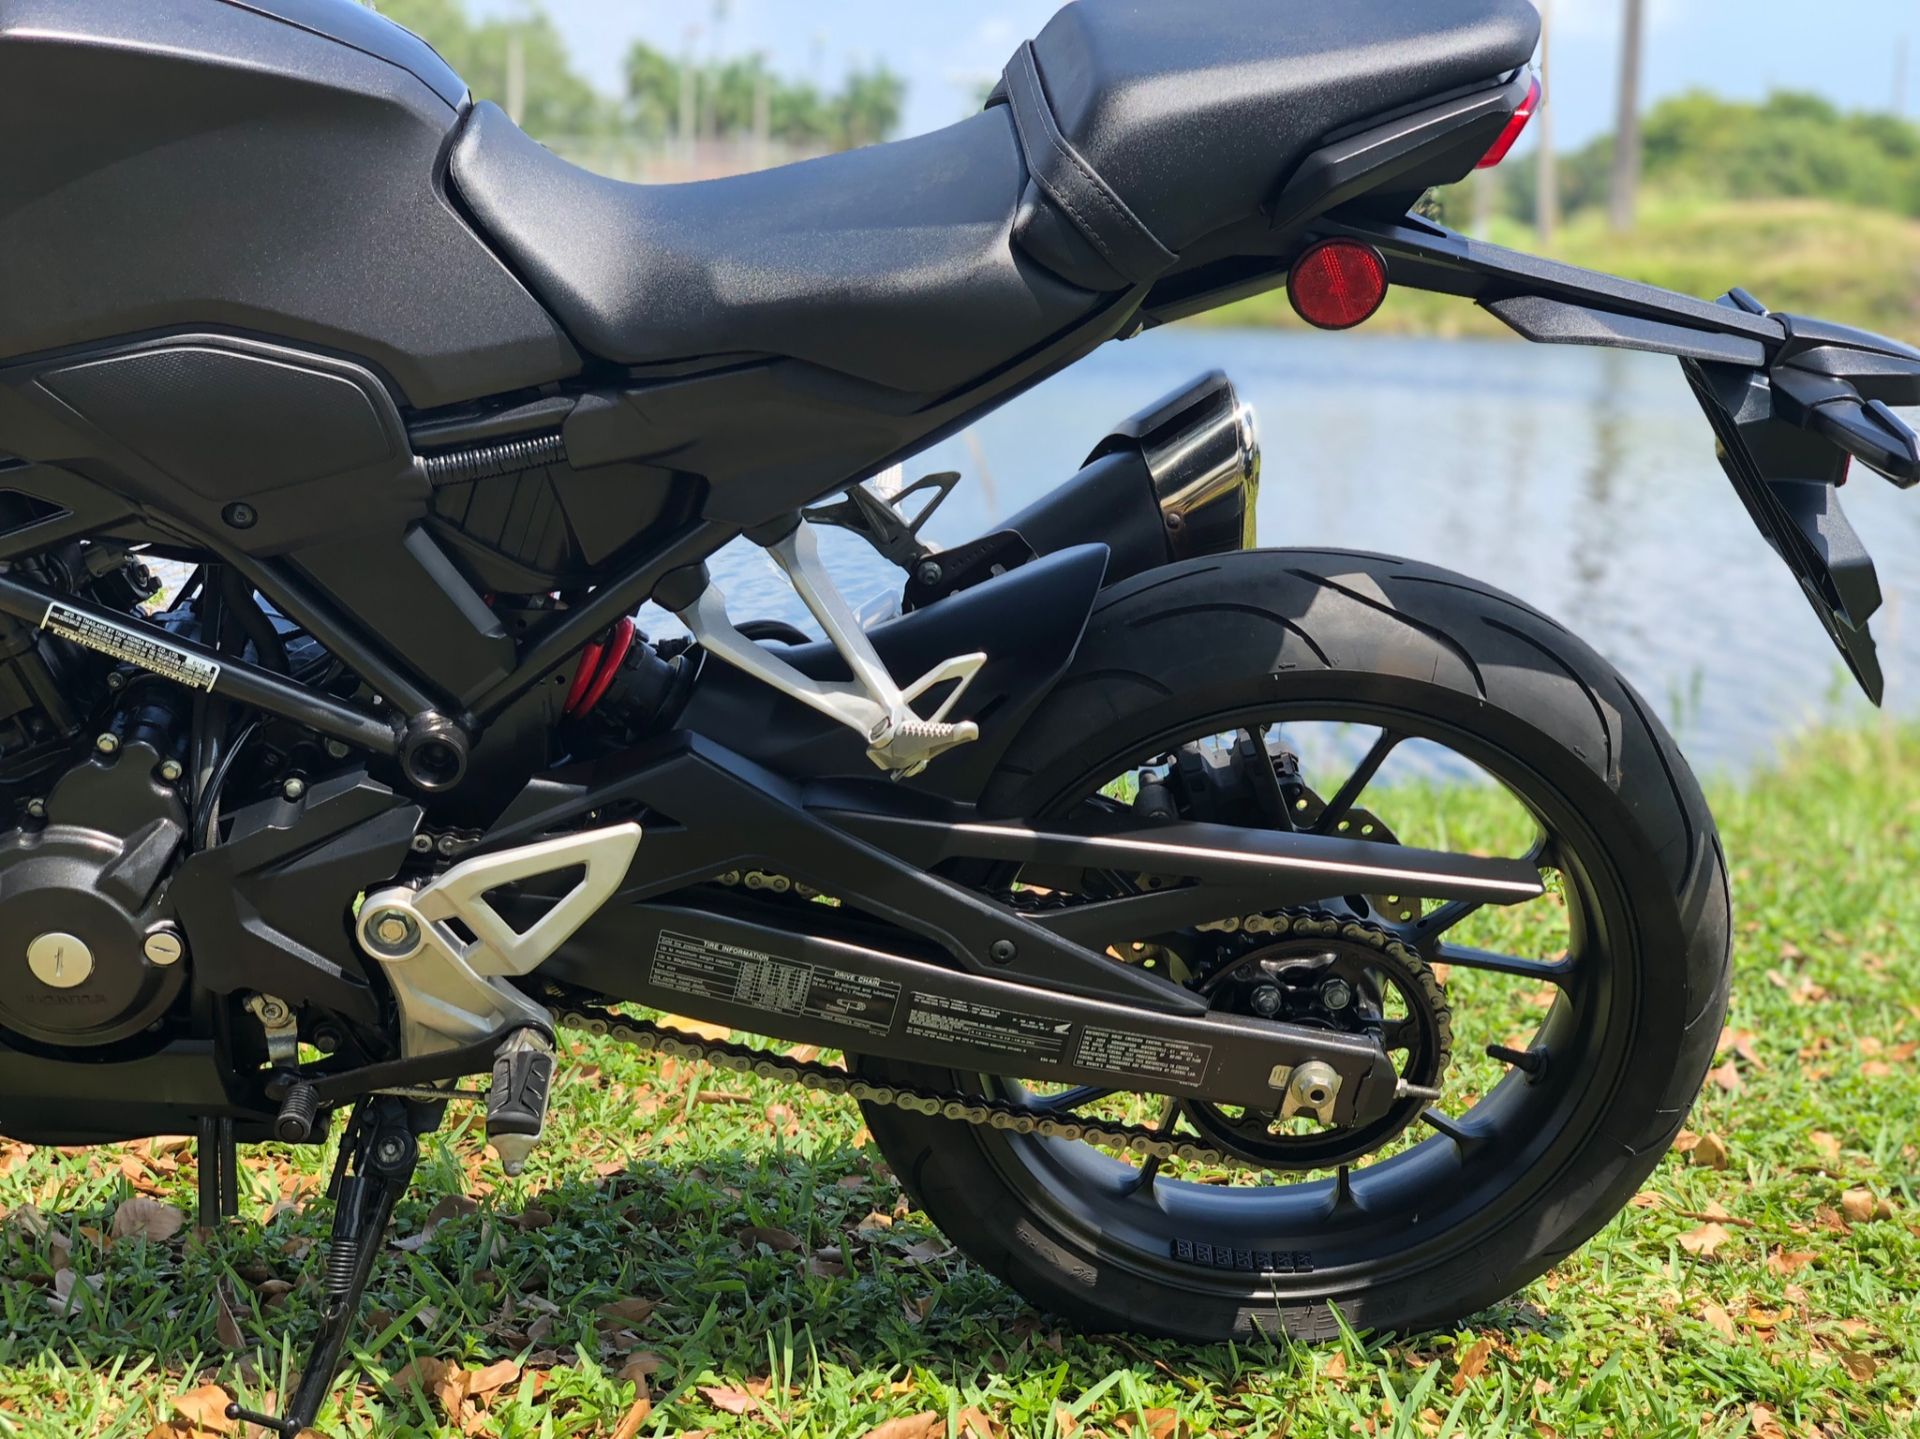 2019 Honda CB300R in North Miami Beach, Florida - Photo 15